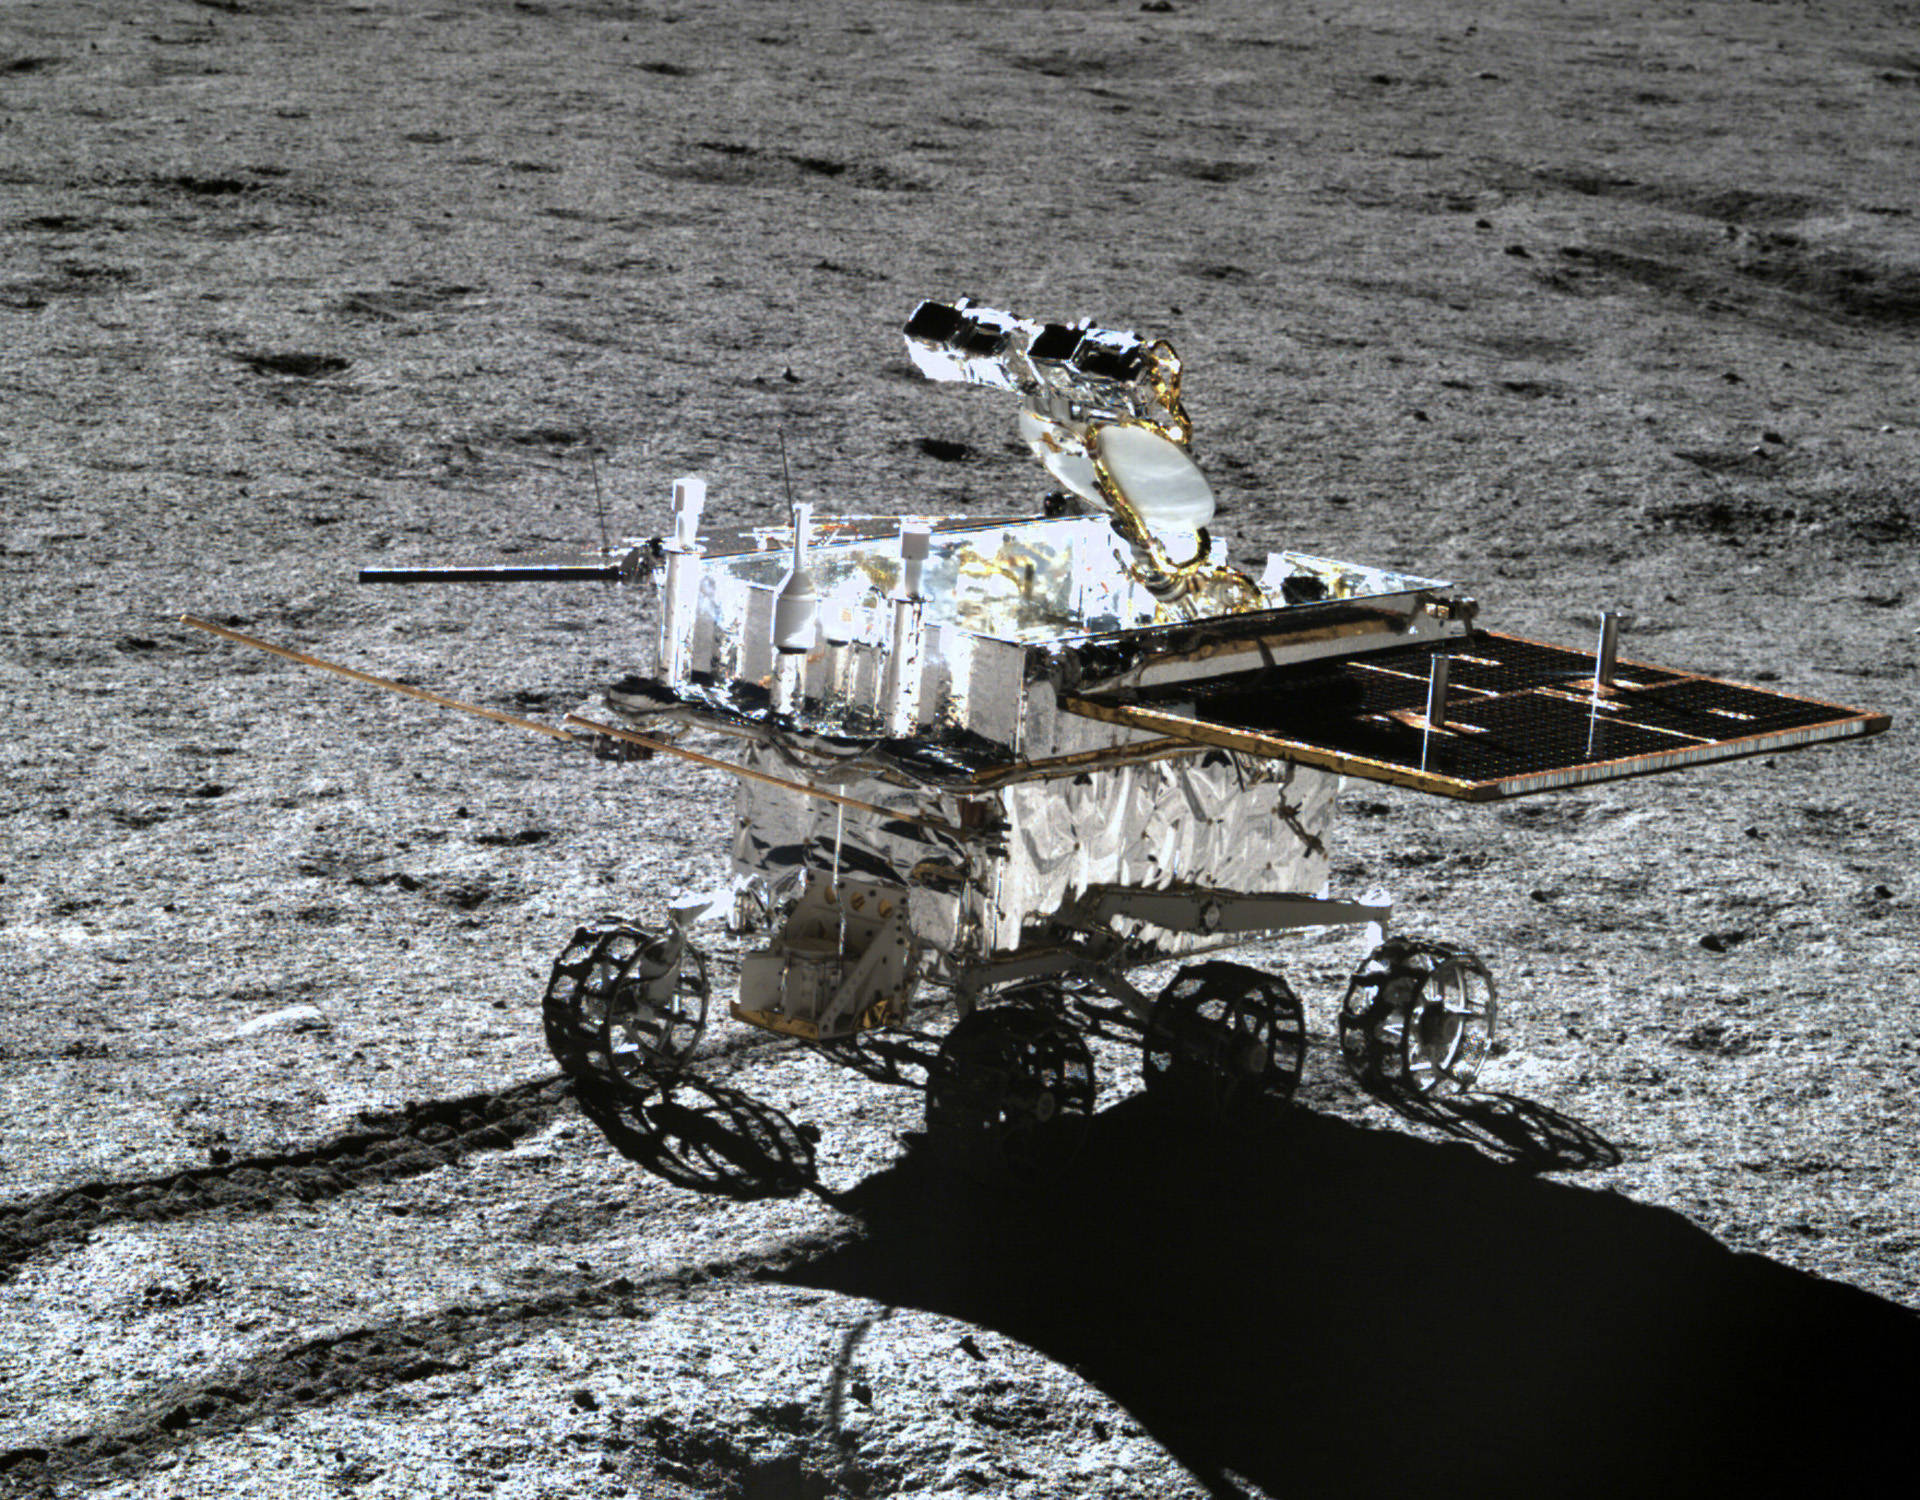 嫦娥八号提供的国际合作重量资源超过了玉兔二号月球车重量200公斤